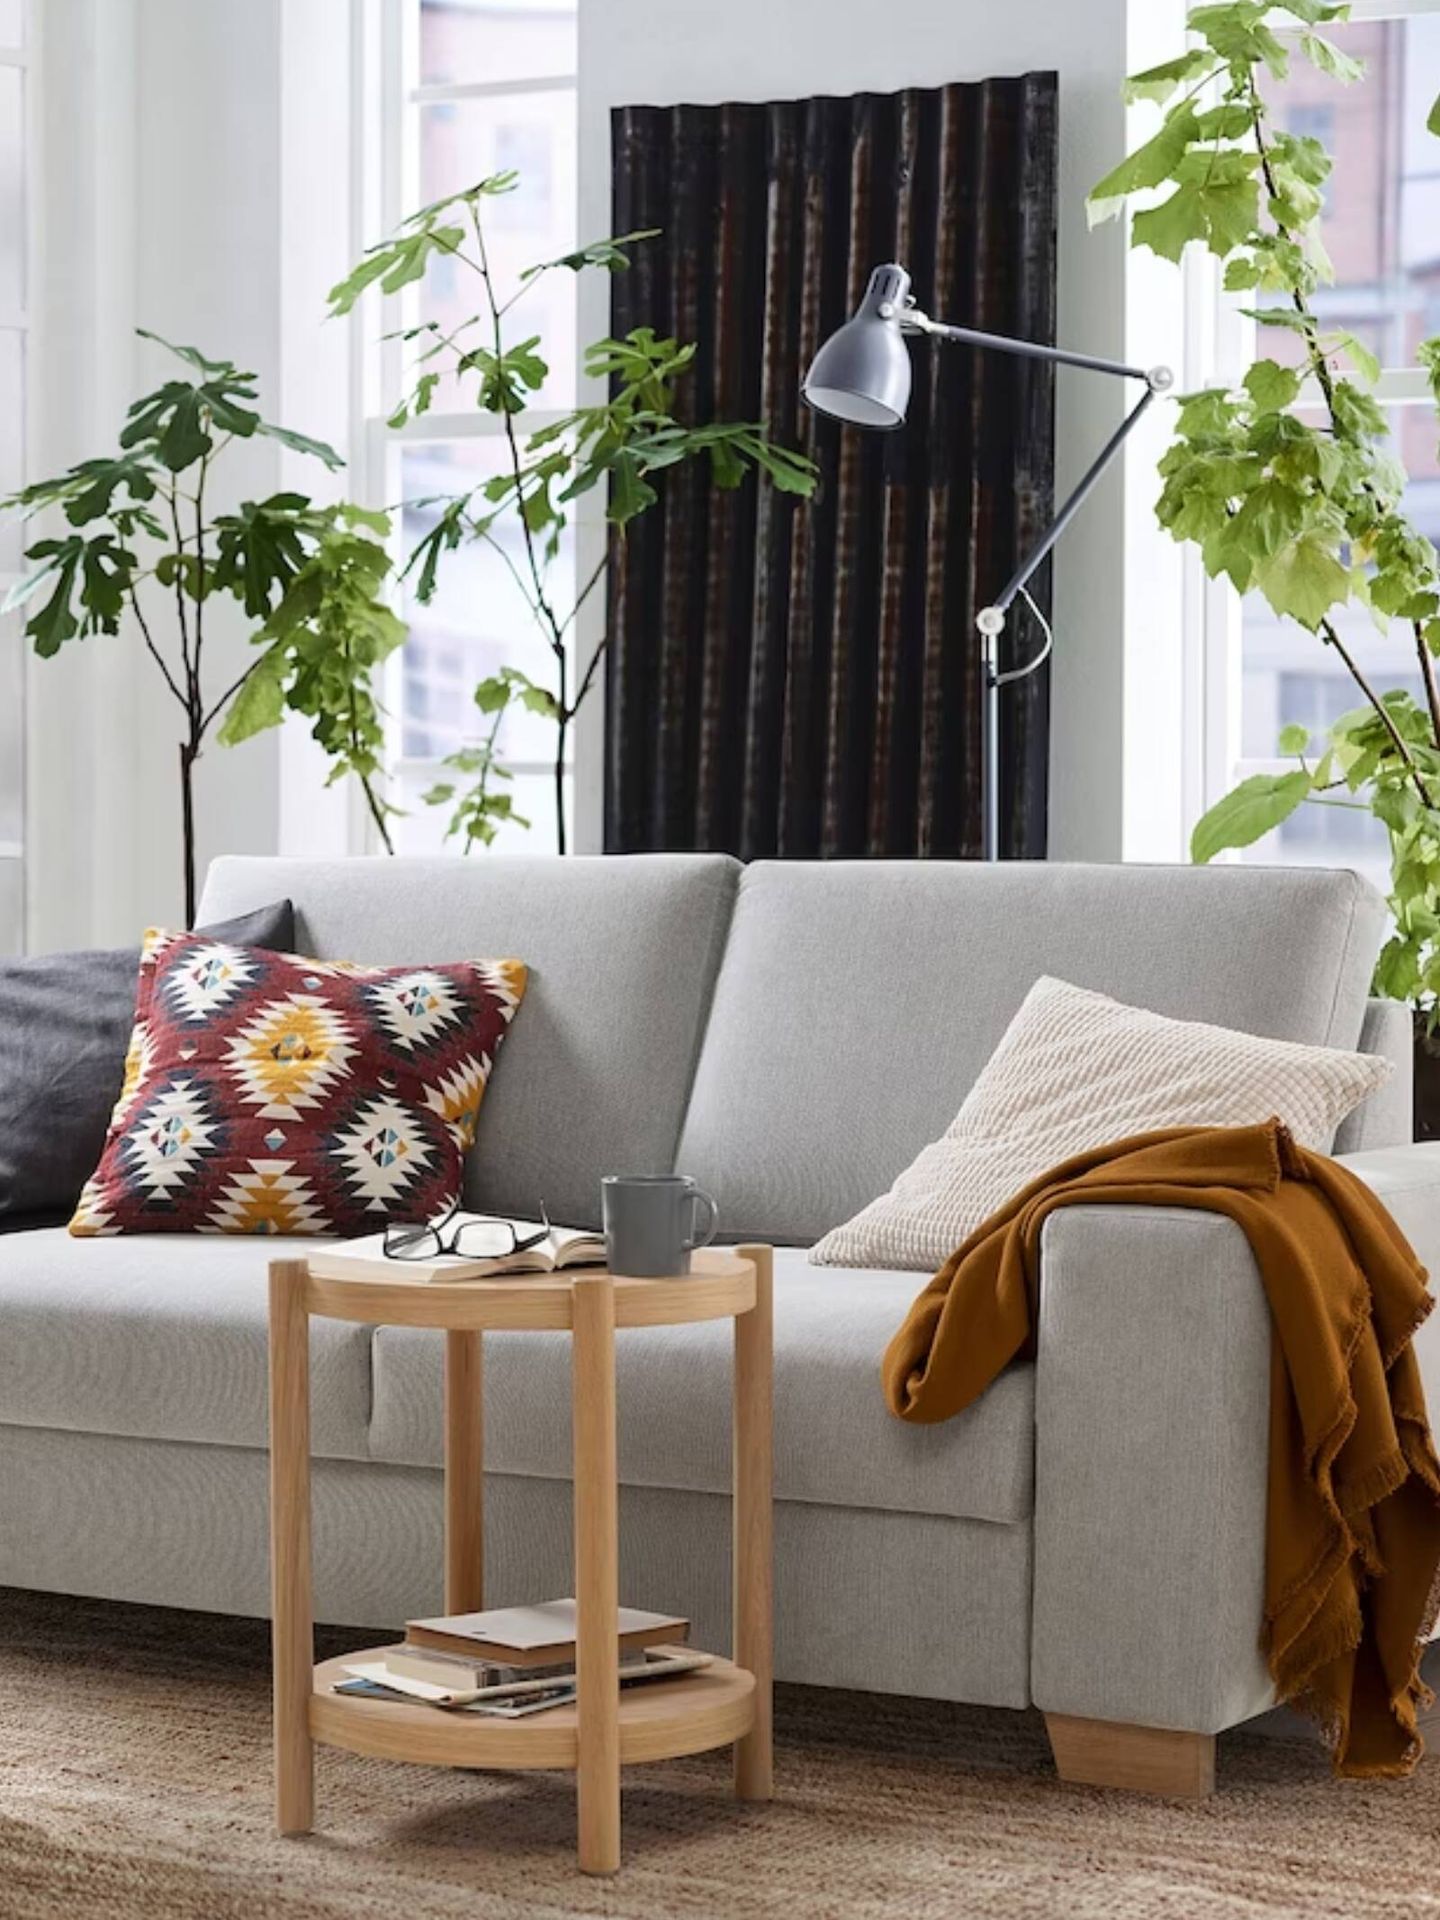 Nuevo sofá de Ikea para casas estilosas y de tendencia. (Cortesía/Ikea)